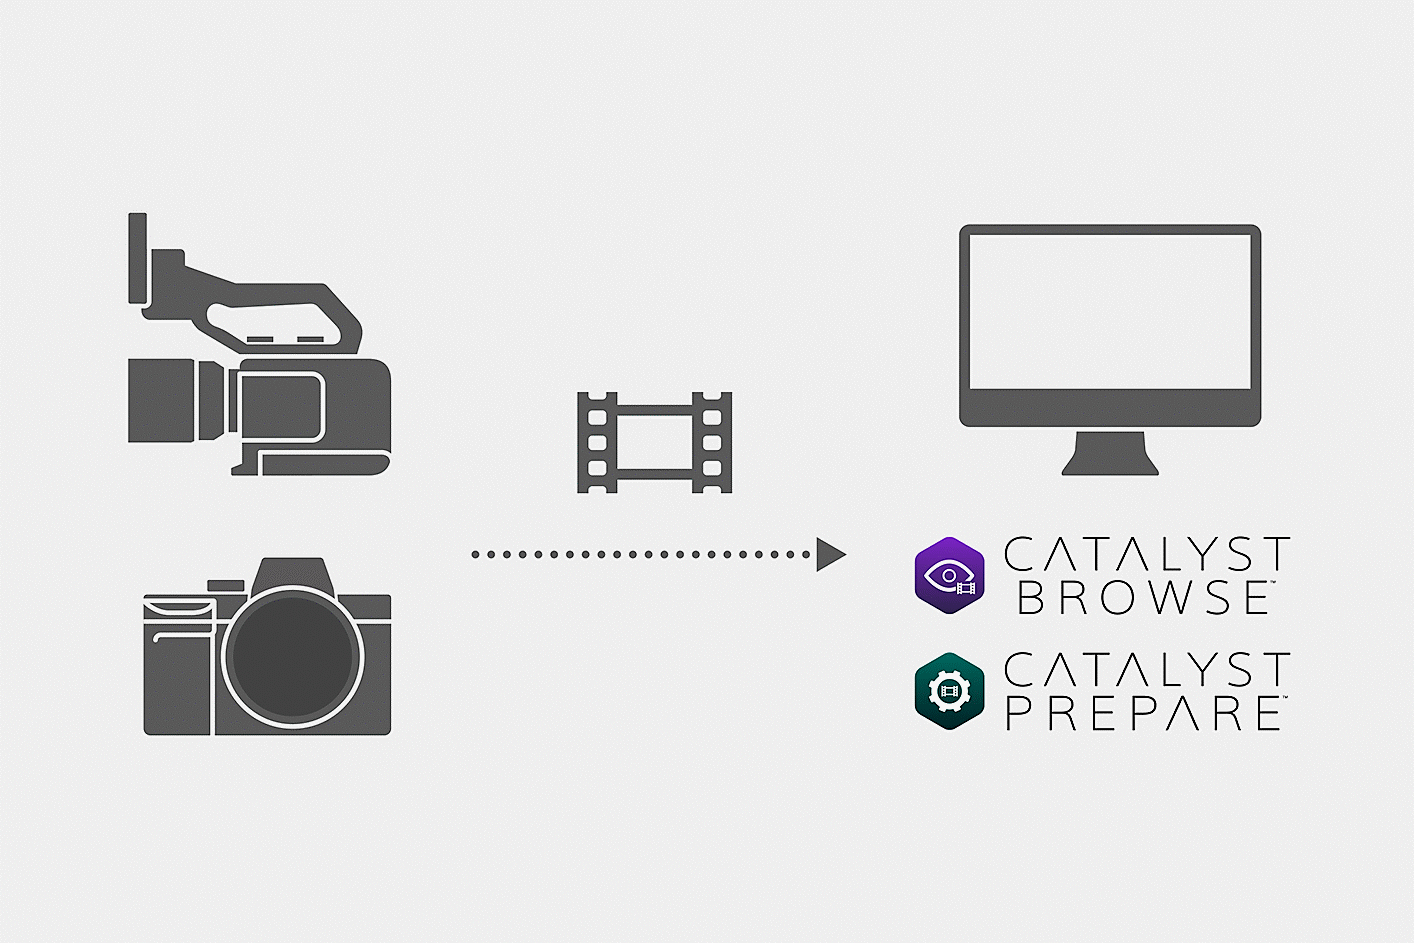 ภาพประกอบแสดงวิธีที่ไฟล์วิดีโอที่ถ่ายด้วยกล้องถูกโหลดลงใน Catalyst Browser หรือ Catalyst Prepare